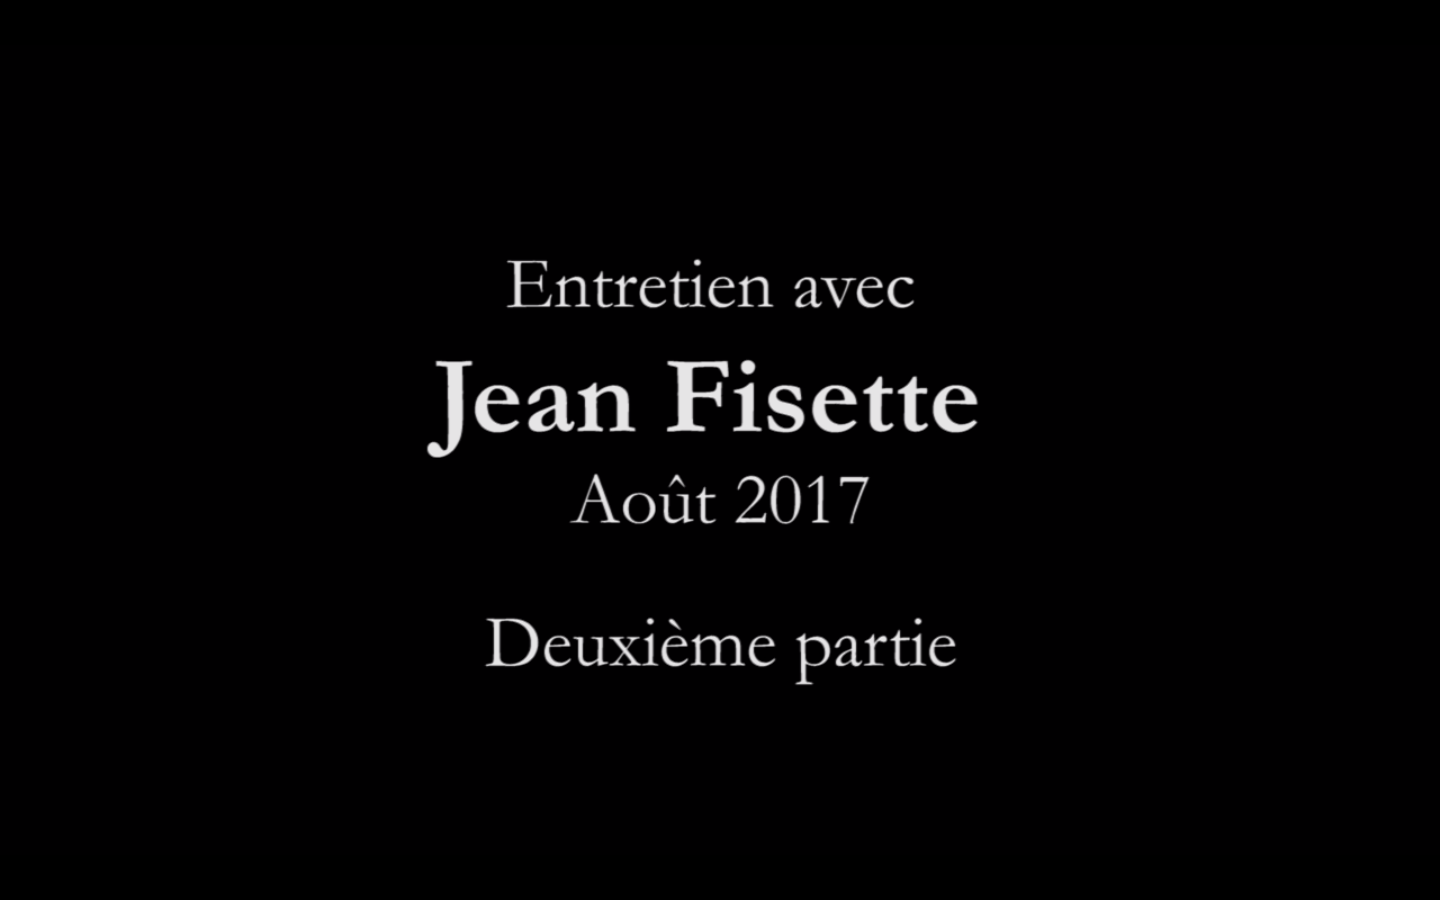 Entretien avec Jean Fisette (deuxième partie)